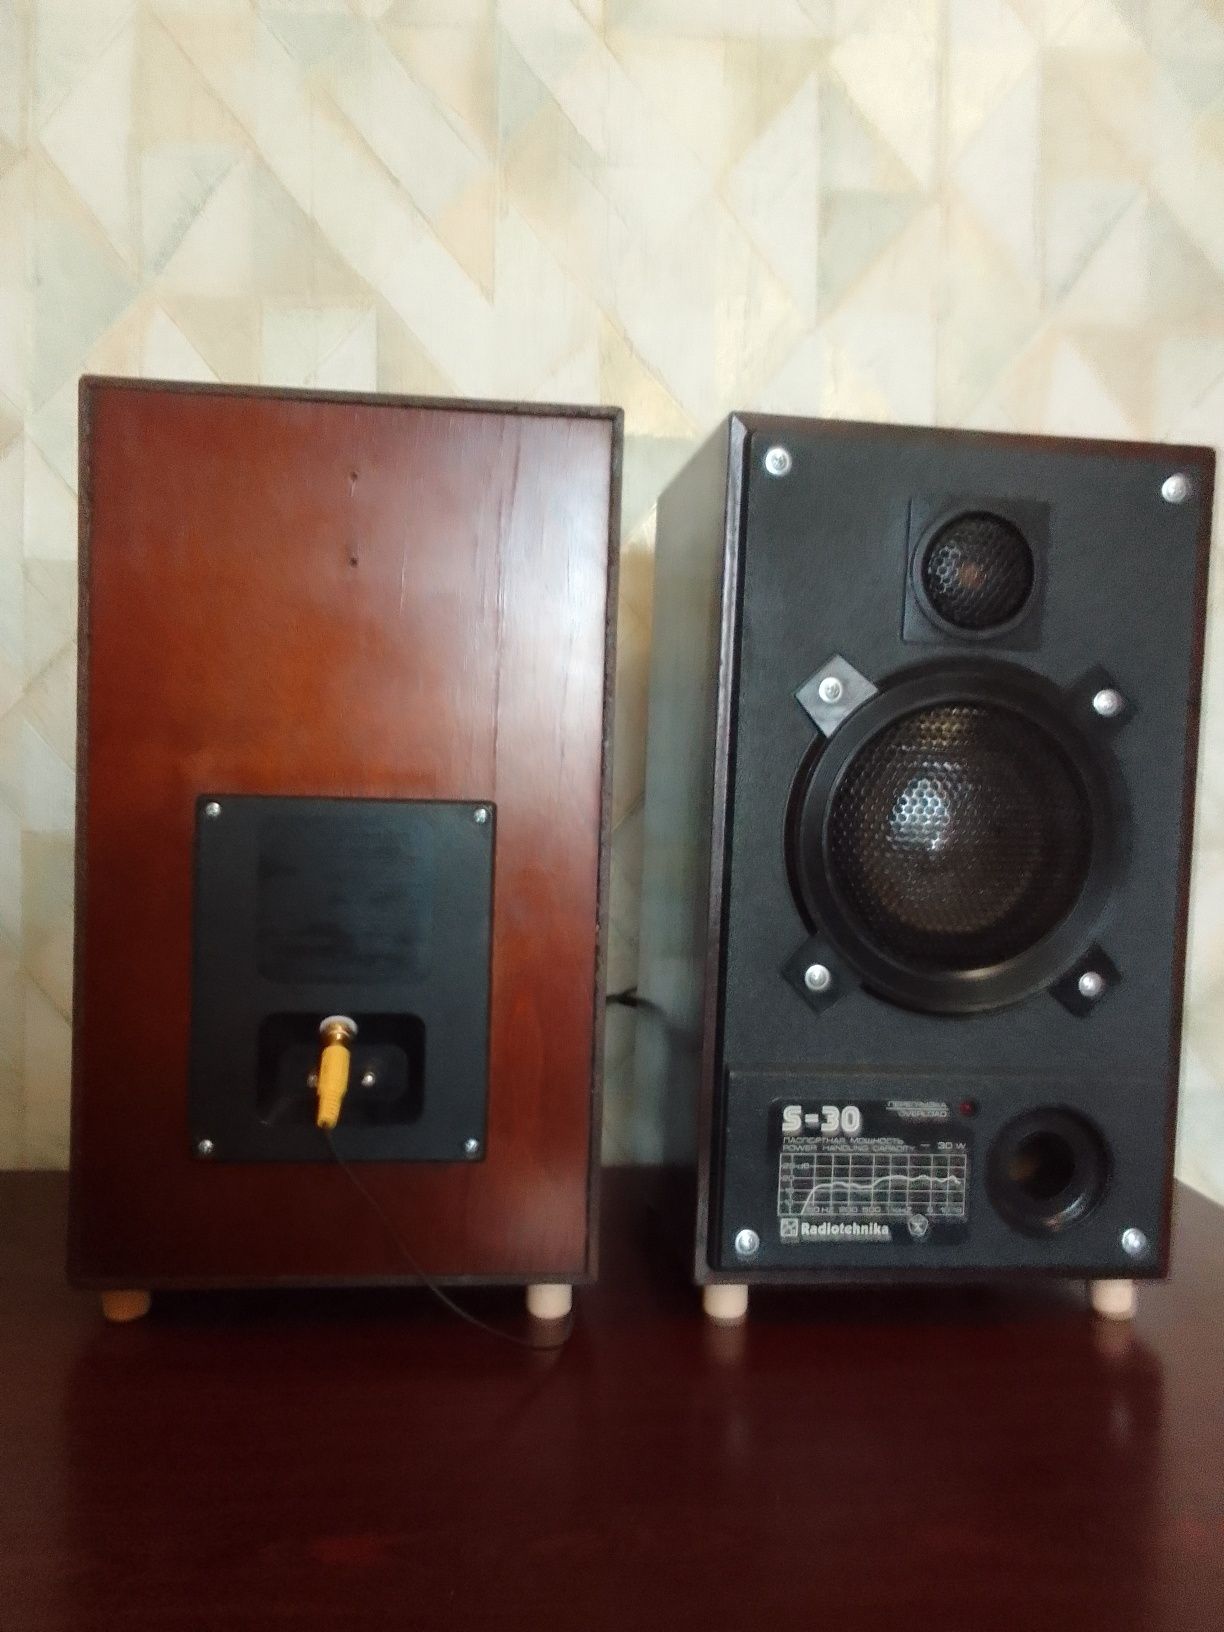 Продается активная акустика Radiotehnika S-30